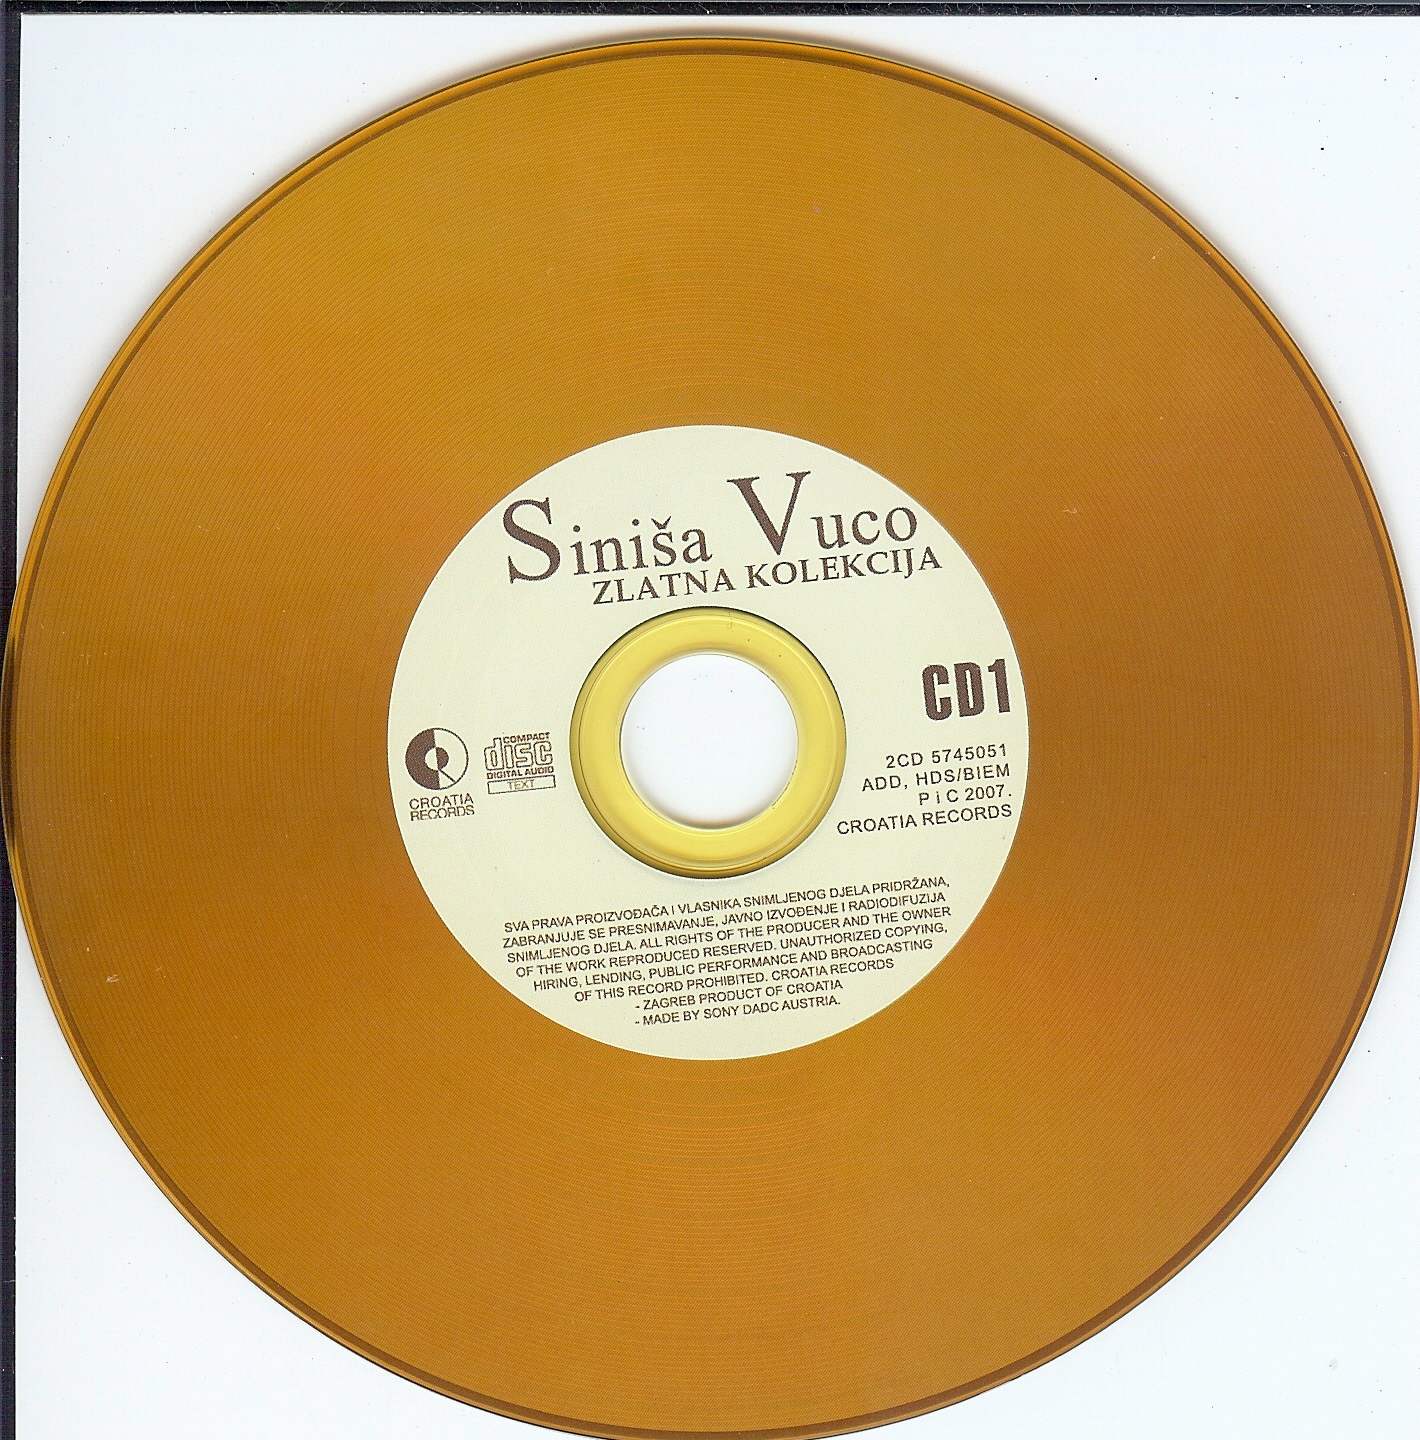 Sinisa Vuco Zlatna kolekcija 2007 cd 1